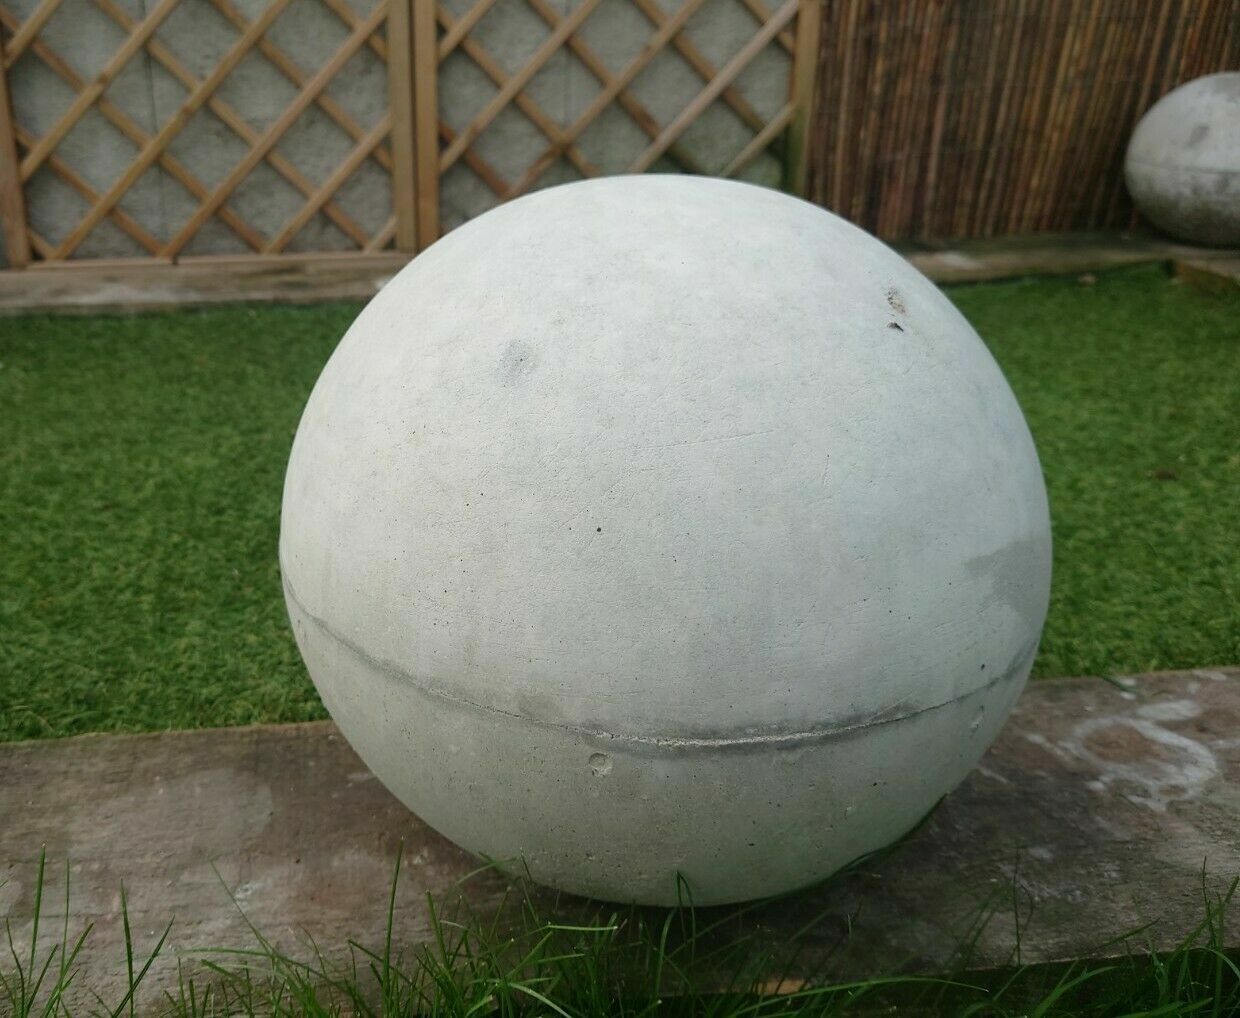 Litestone Garden Sphere Concrete Ornament | WG Outdoor Life | Perth